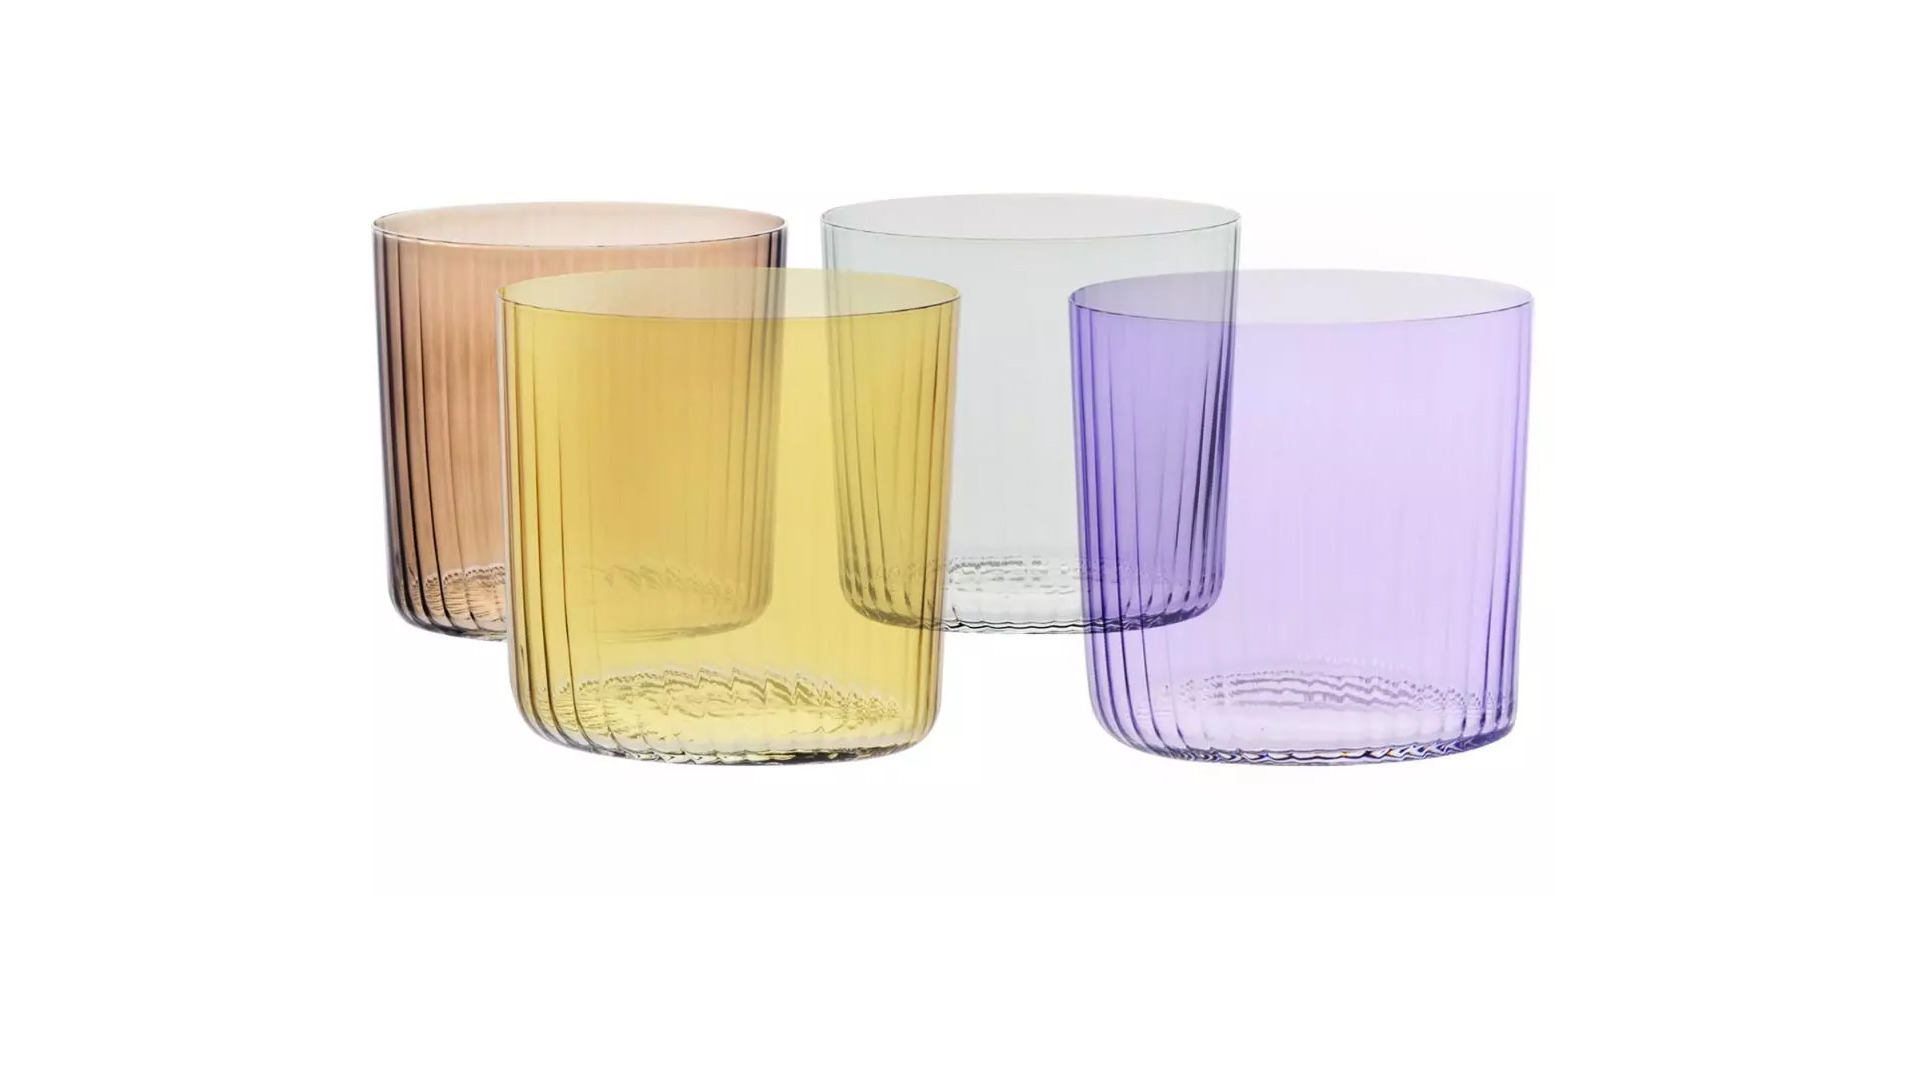 Набор бокалов для воды Krosno Деко 350 мл, 4 цвета, 4 шт, стекло